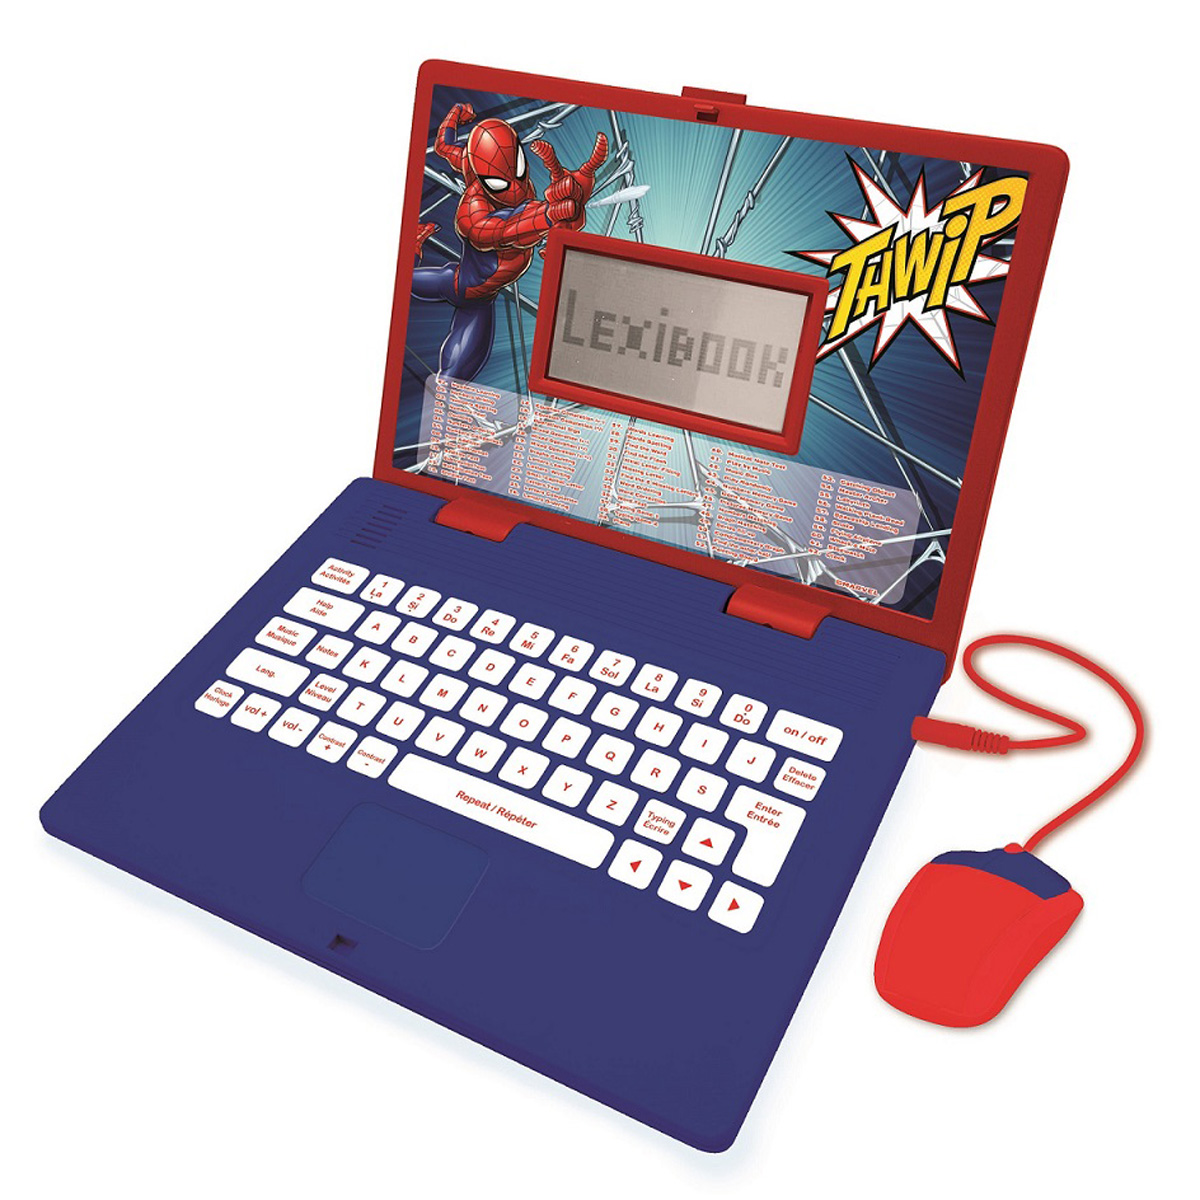 Lerncomputer, (Deutsch Lernlaptop Englisch) Blau/Rot / Zweisprachig Spider-Man LEXIBOOK -